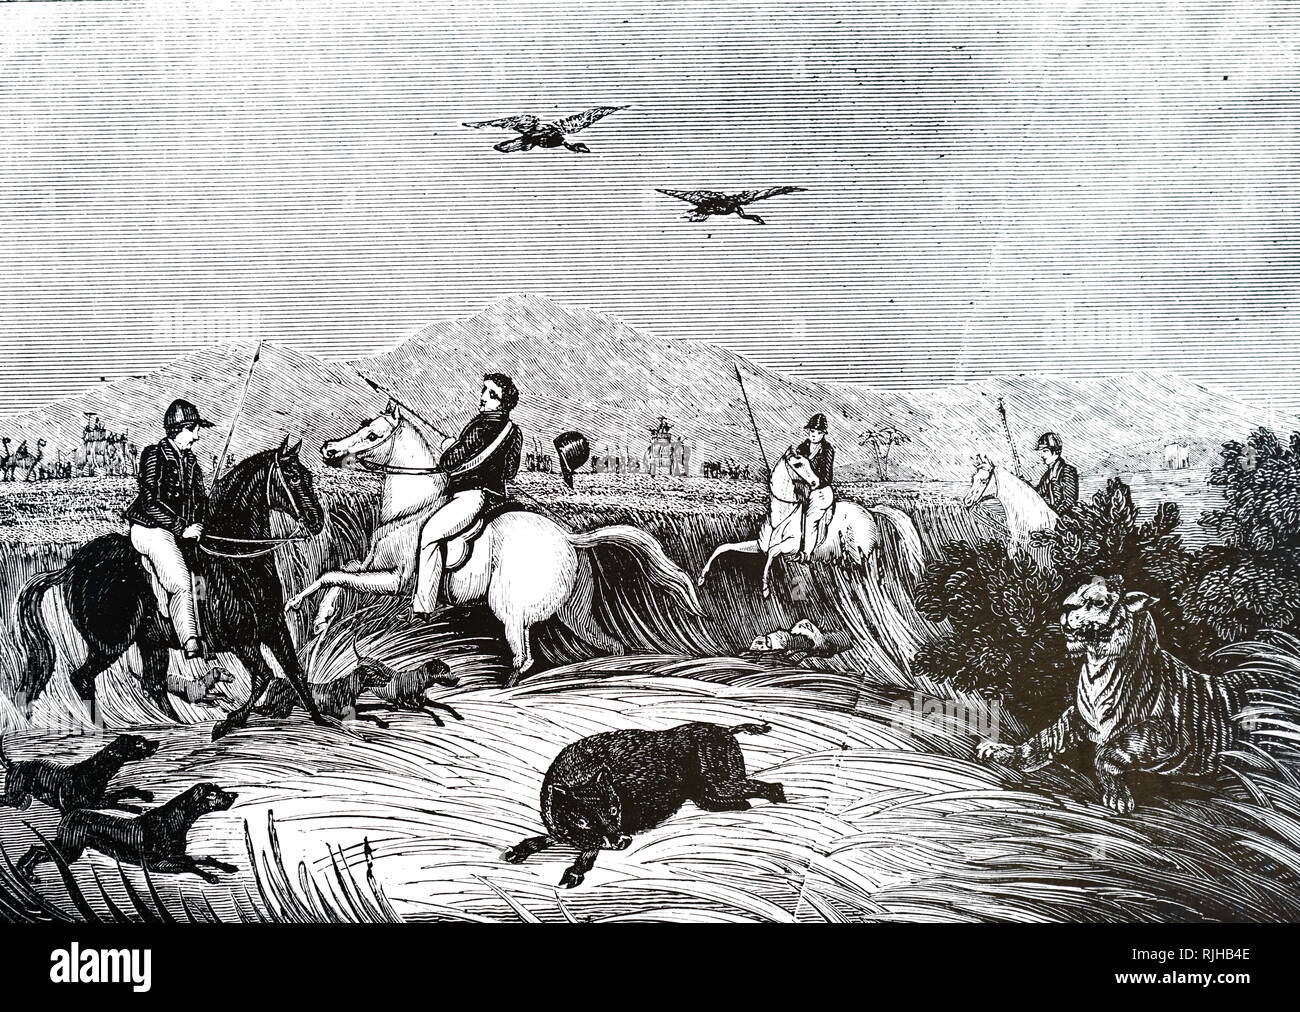 Gravure représentant des autorités coloniales britanniques la chasse un tigre en Inde, vers 1860 Banque D'Images